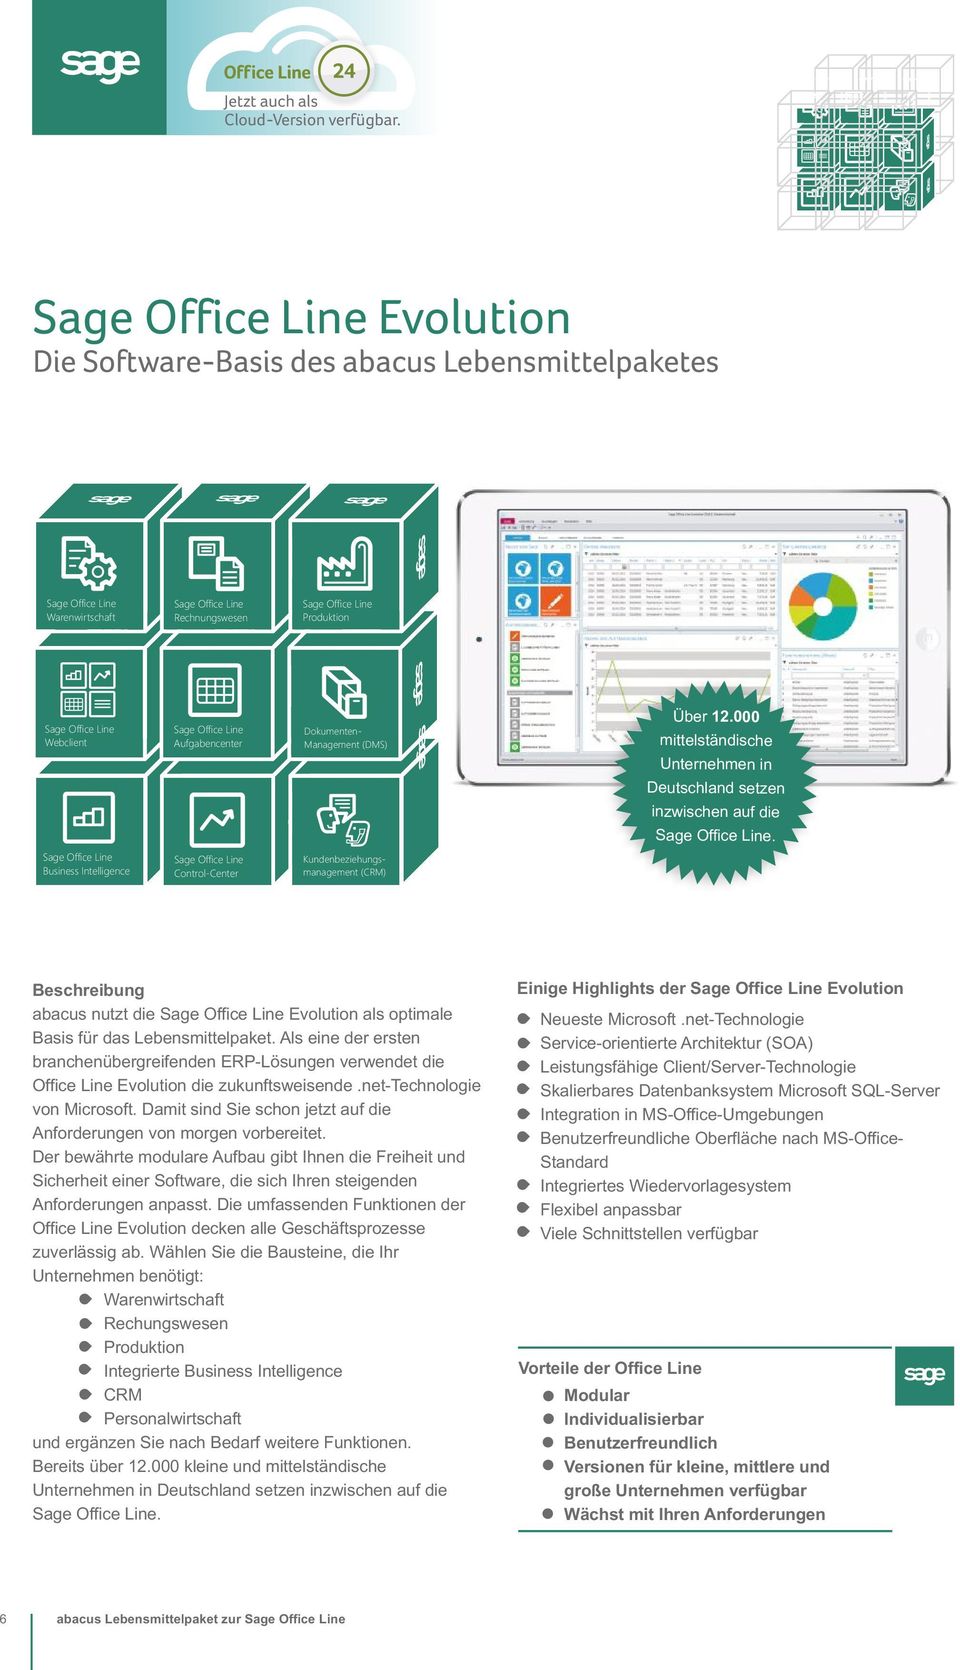 Sage Office Line Aufgabencenter Dokumenten- Management (DMS) Über 12.000 mittelständische Unternehmen in Deutschland setzen inzwischen auf die Sage Office Line.